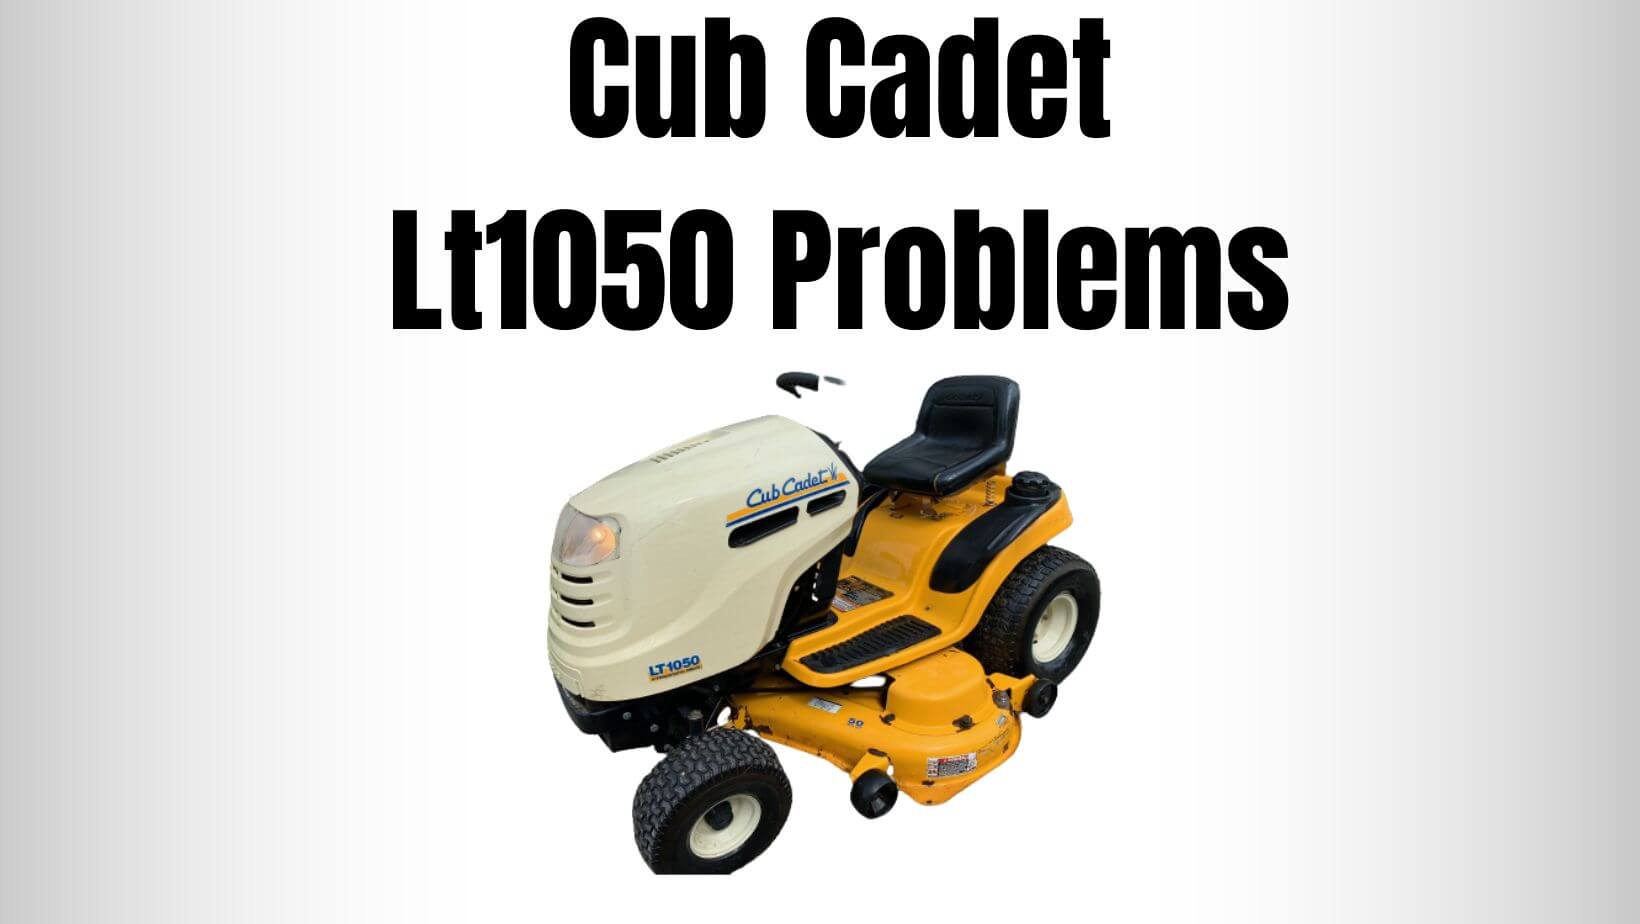 Cub Cadet Lt1050 Problems